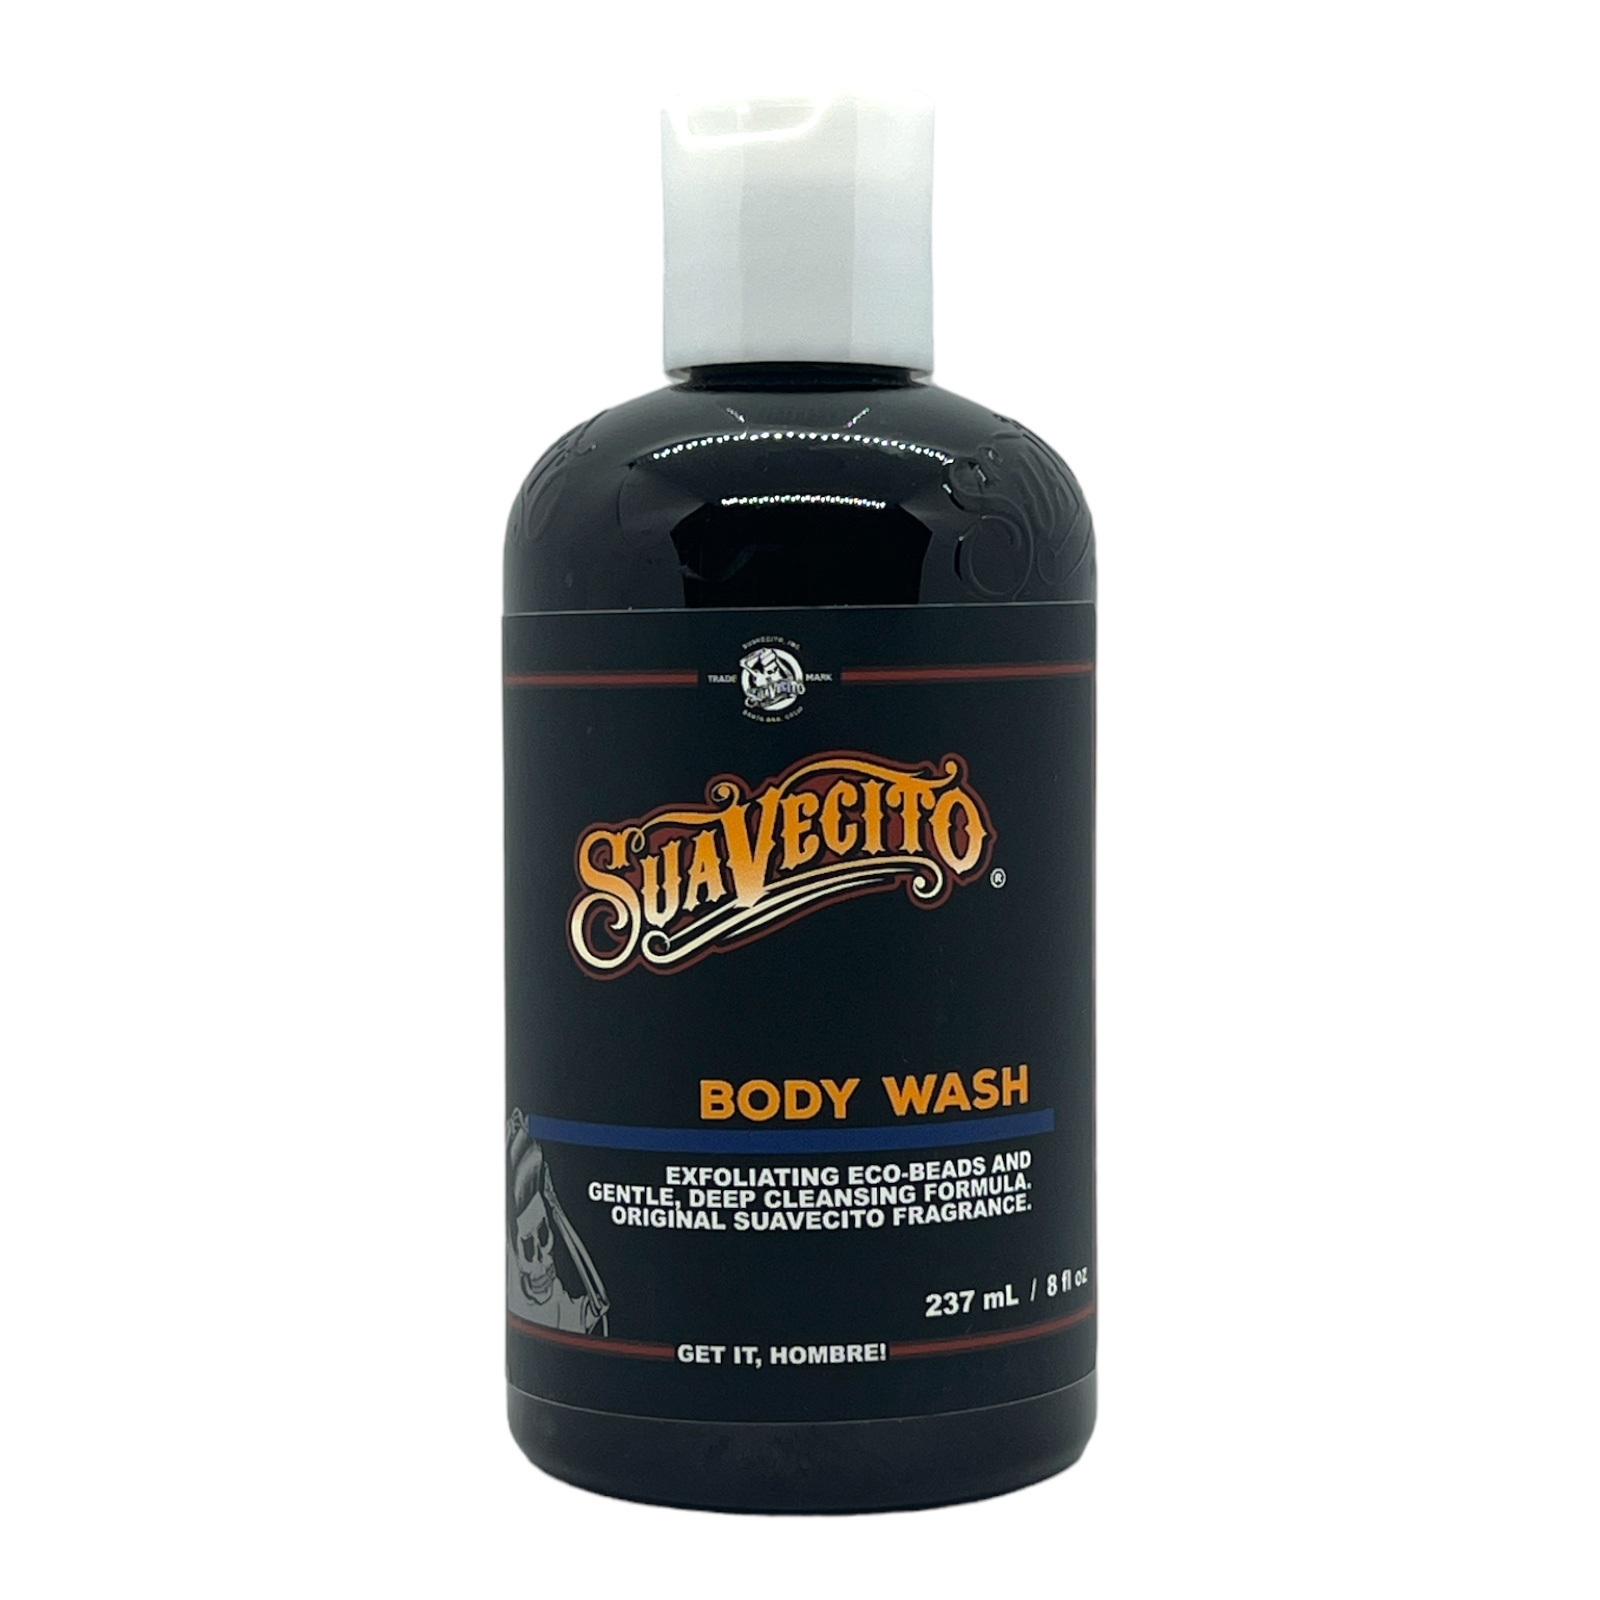 Suavecito Body Wash 8 Oz - $8.99